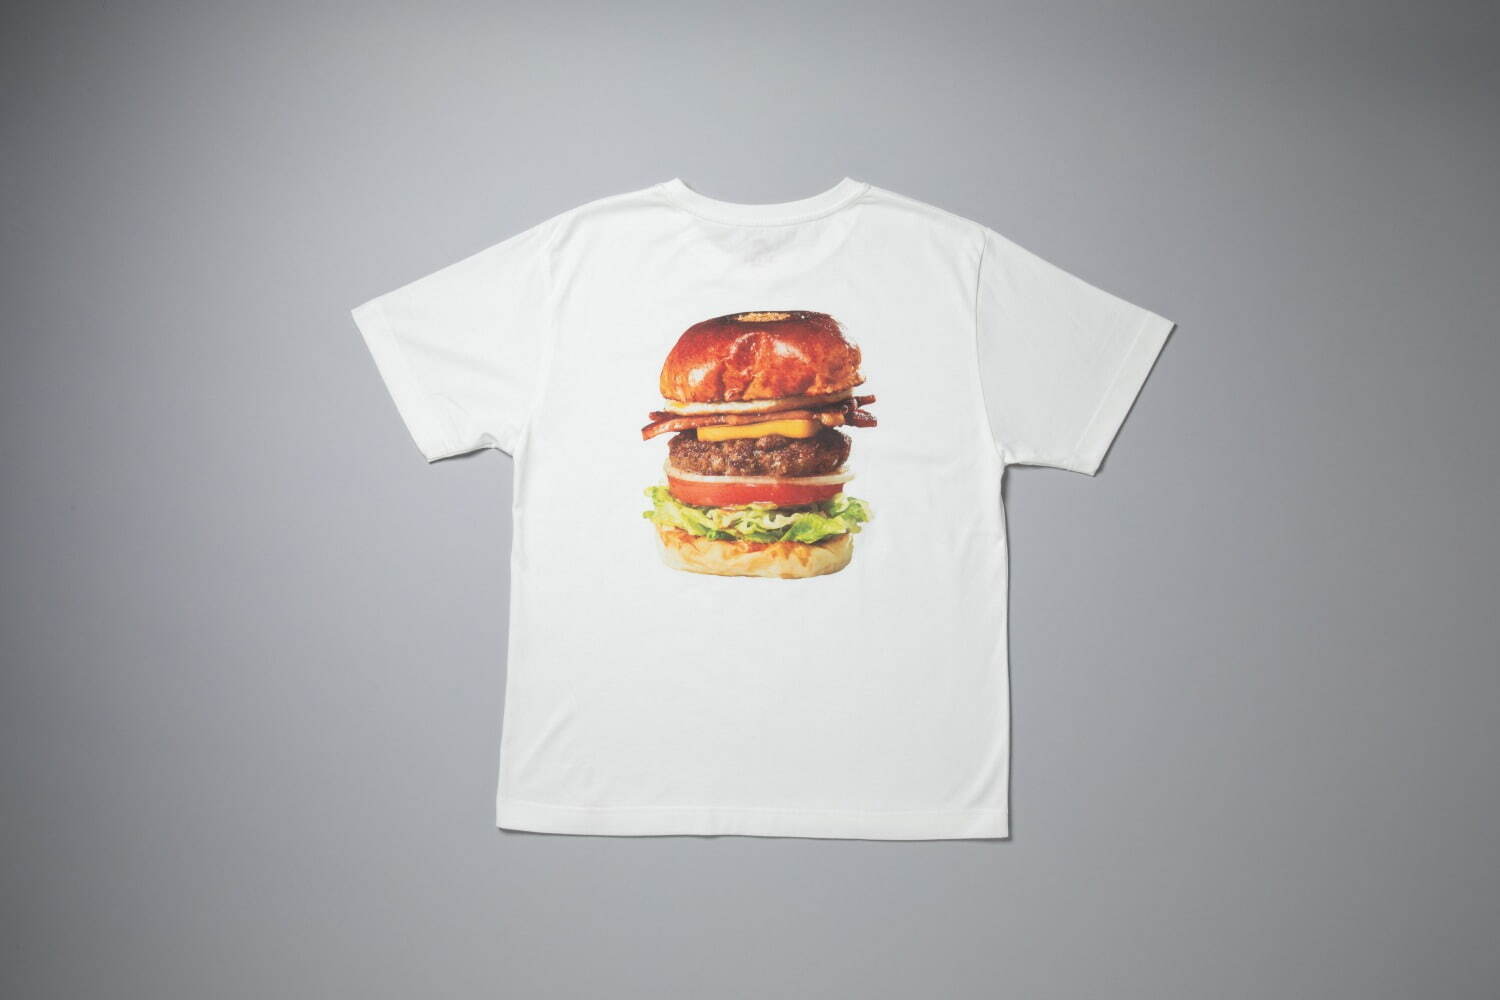 THE CORNER Hamburger & Saloon
ハンバーガーTシャツ 4,950円